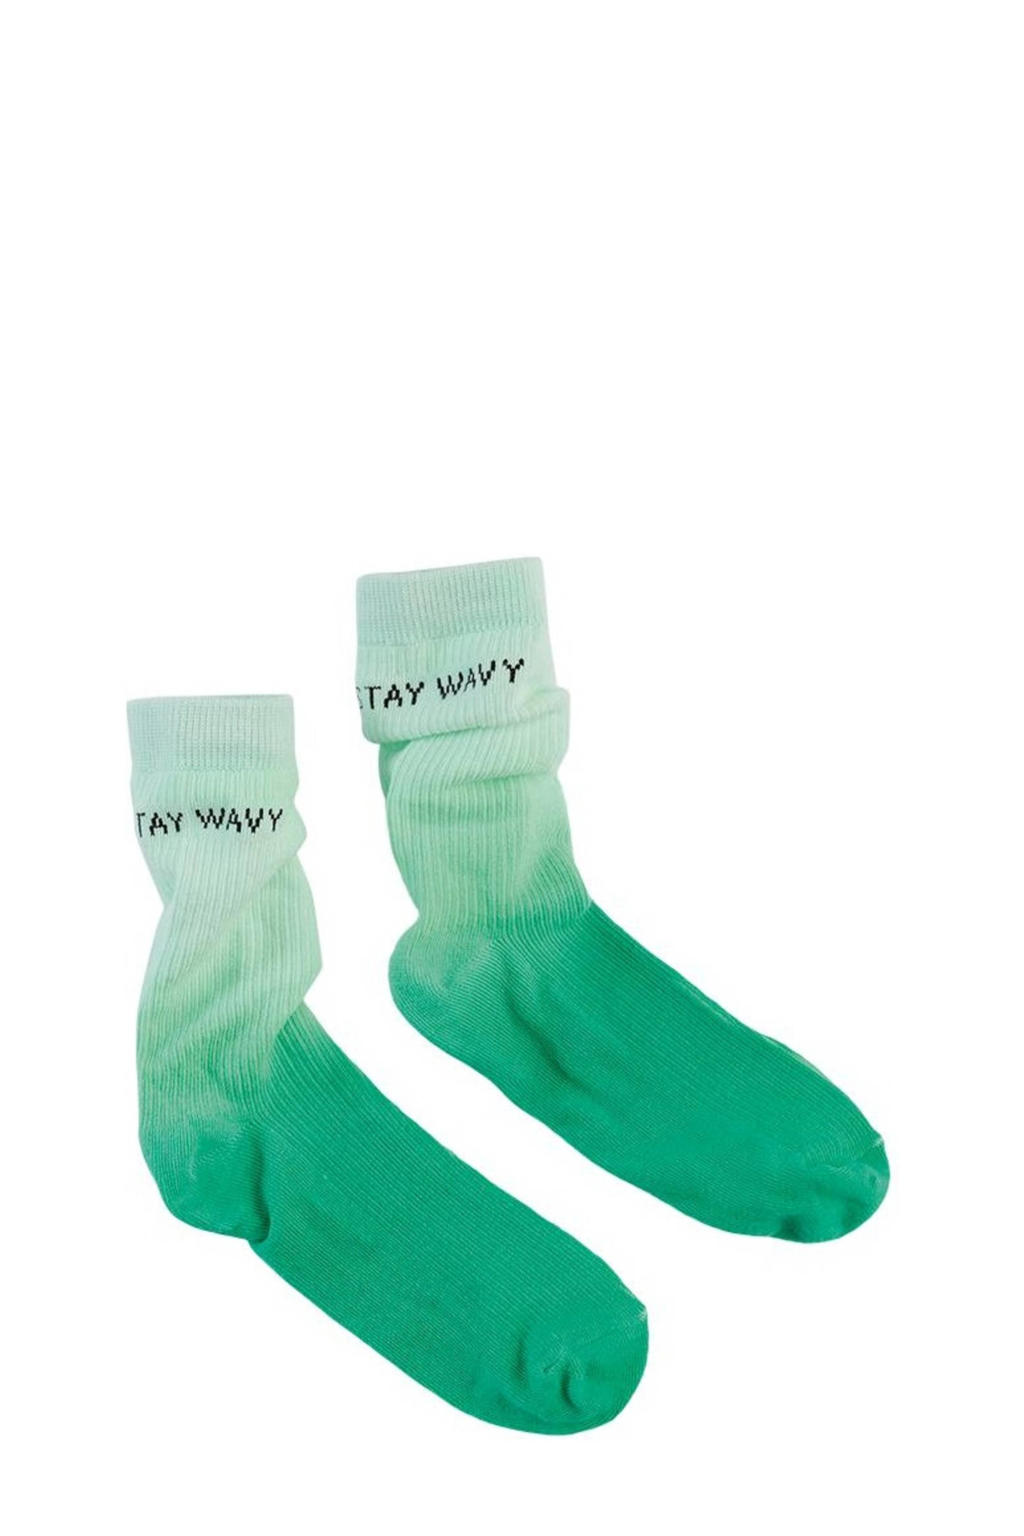 Z8 sokken groen